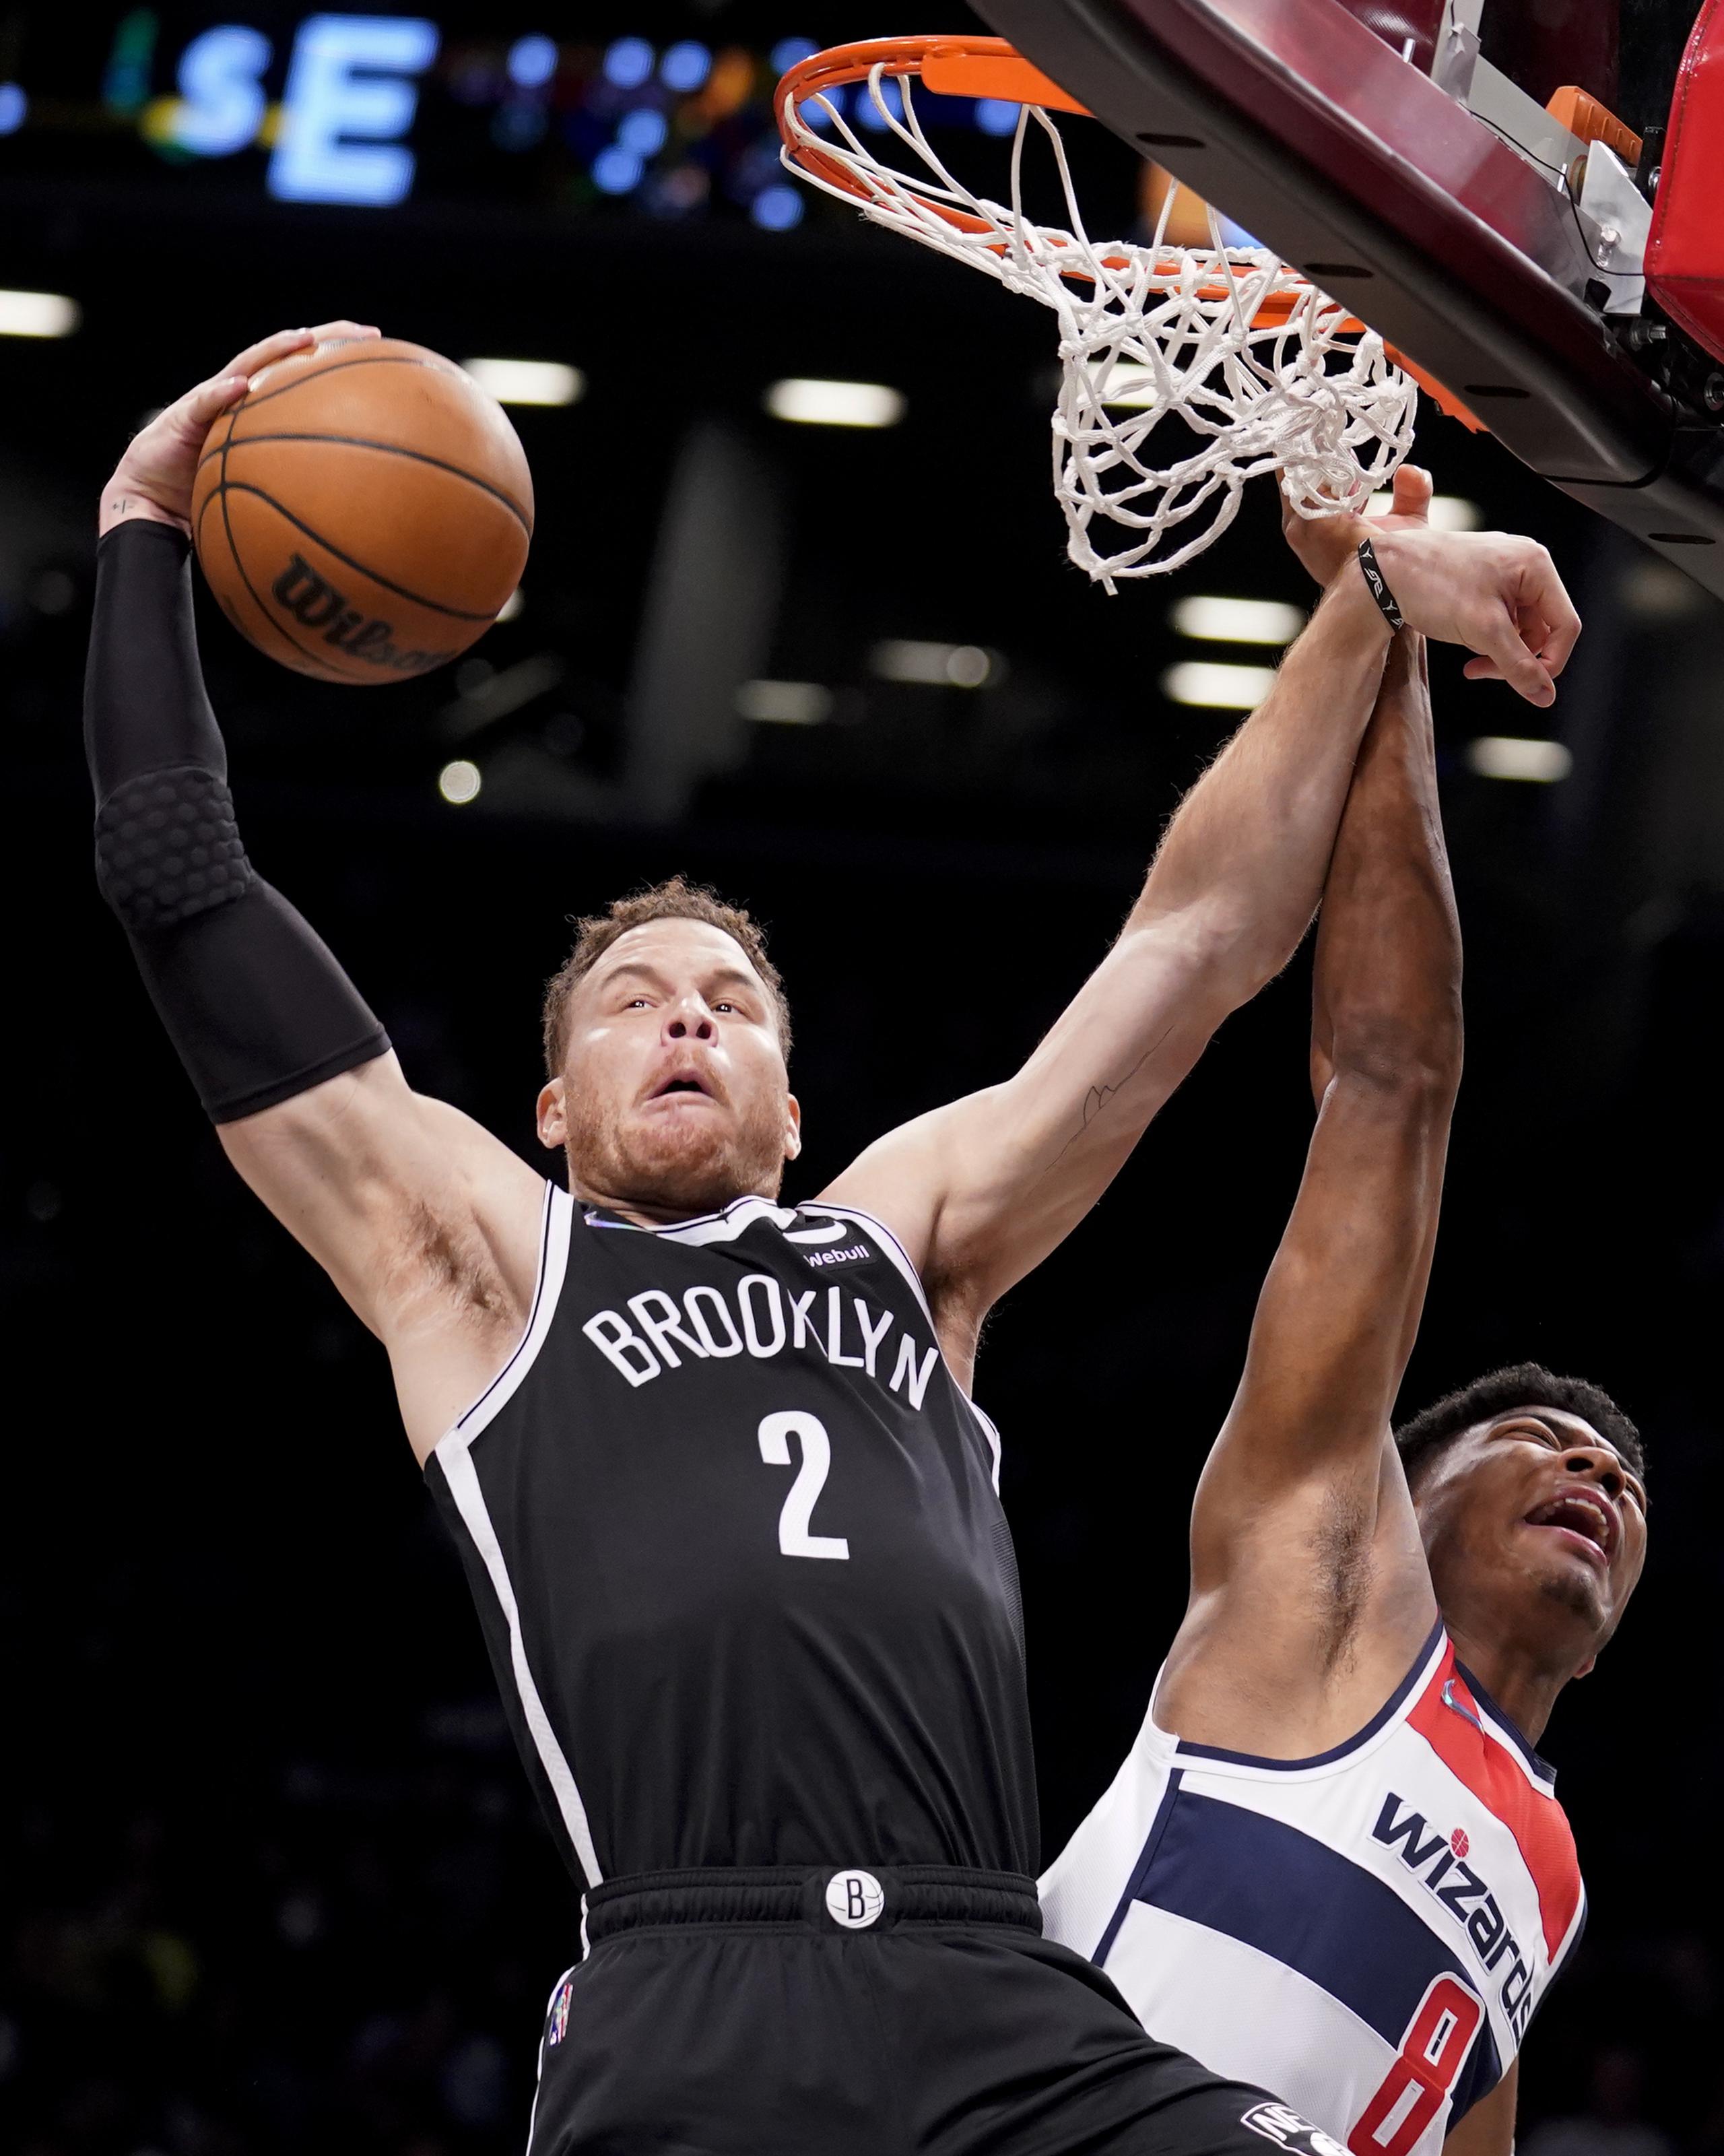 En foto del 17 de febrero del 2022, Blake Griffin de los Nets de Brooklyn toma un rebote superando al alero de los Wizards de Washington Rui Hachimura. (AP Foto/John Minchillo)